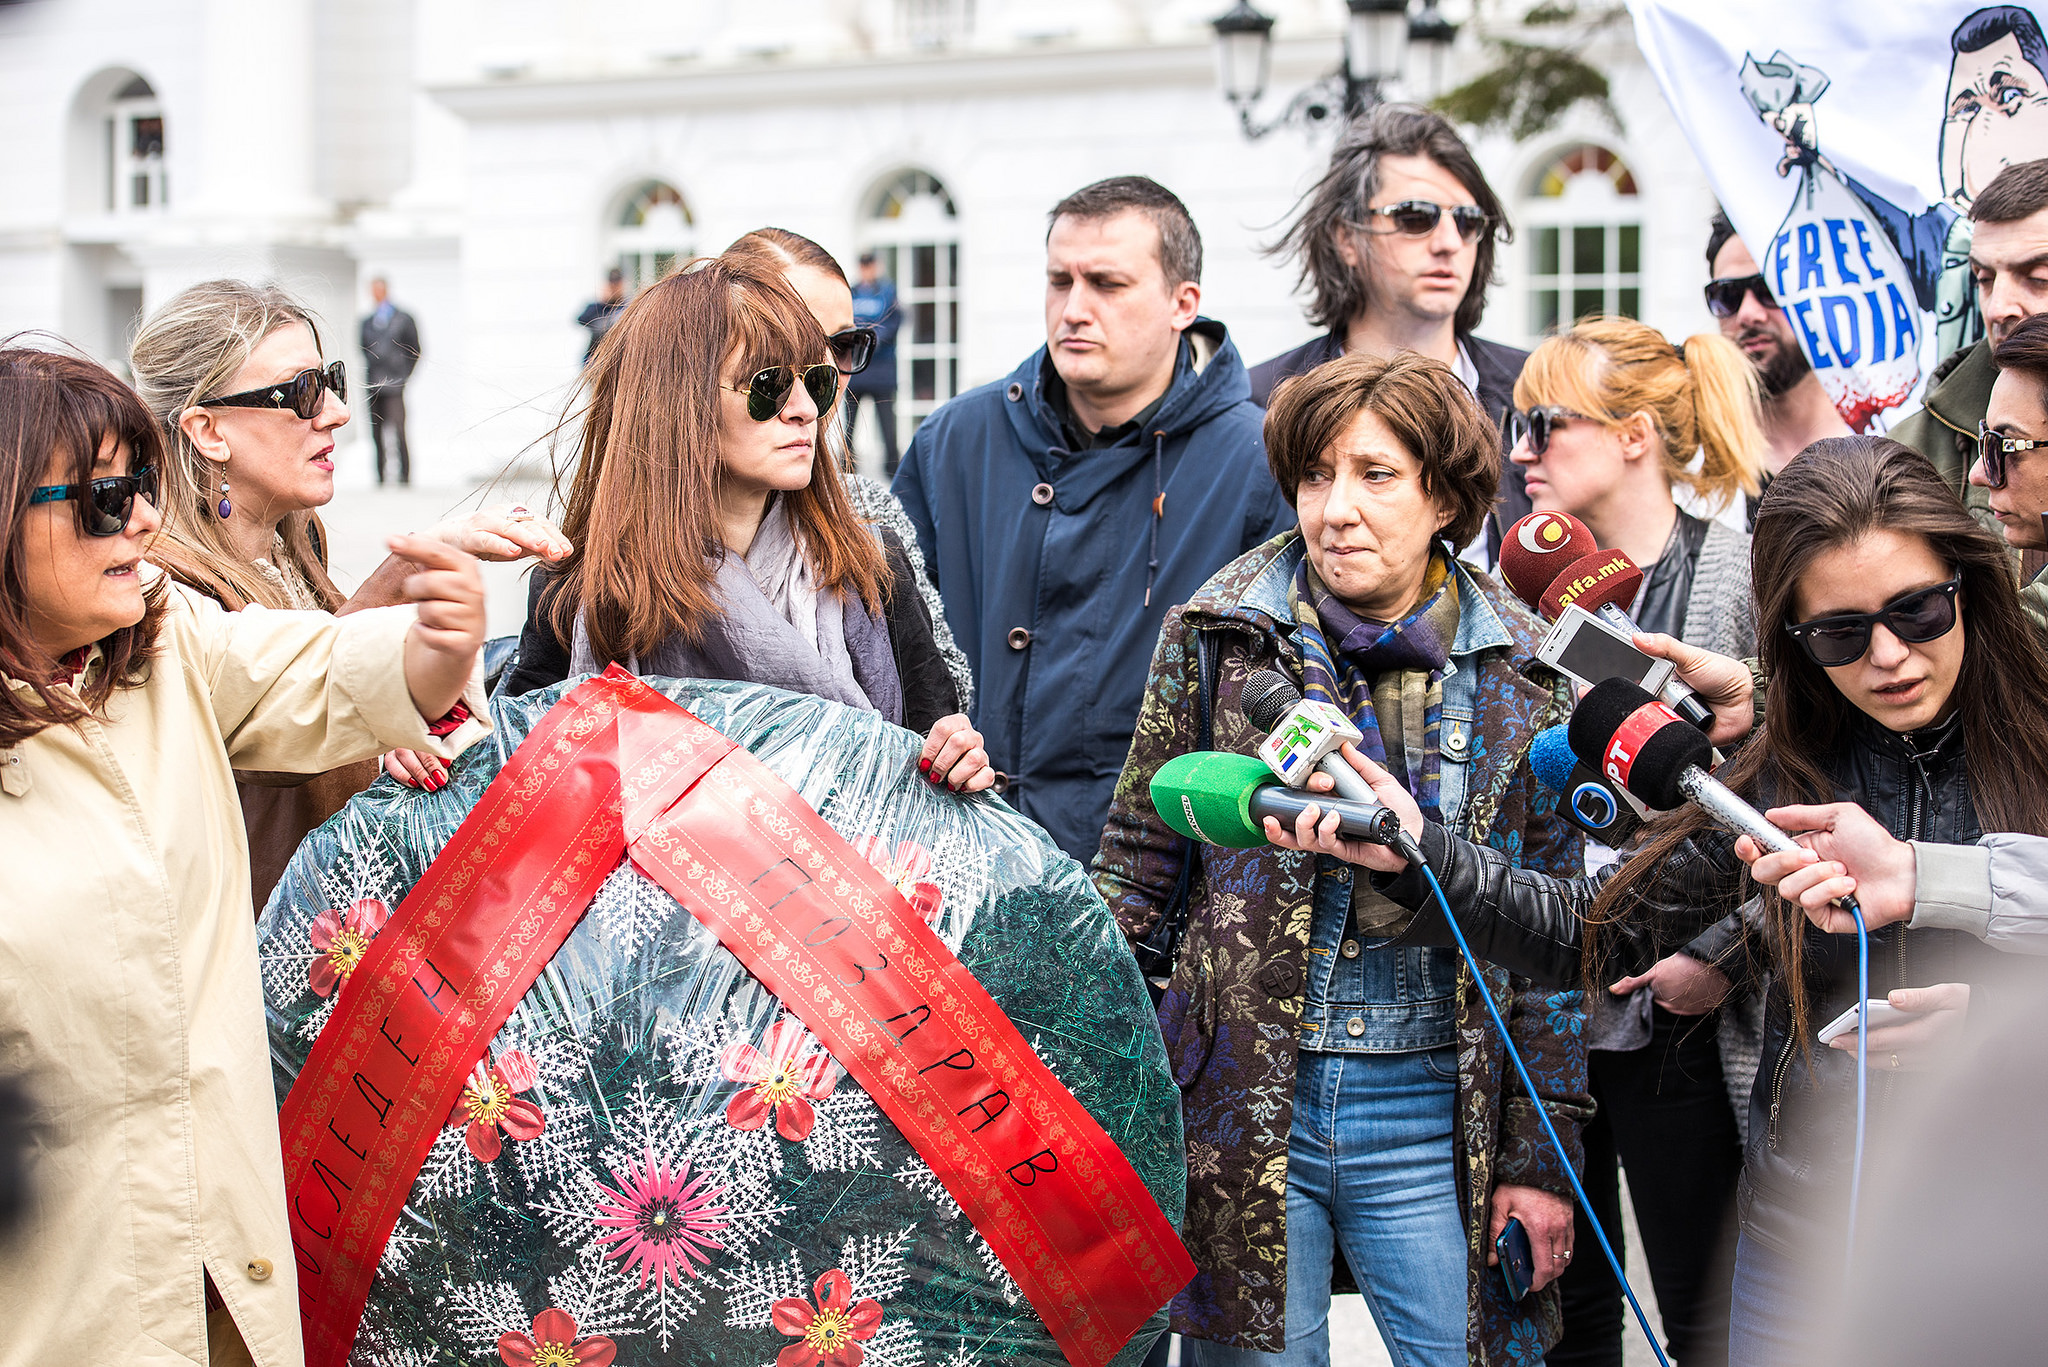 Disa gazetarë dhanë deklarata gjatë protestës në Shkup në lidhje me kërcënimet me vdekje të bëra ndaj gazetarit Borjan Jovanovski, duke mbajtur kurorën e funeralit e cila i ishte dërguar në shtëpinë e tij në shenjë kërcënimi me vdekje në prill të vitit 2015. Fotografija e Vanço Xhambaskit, e marrë me leje.